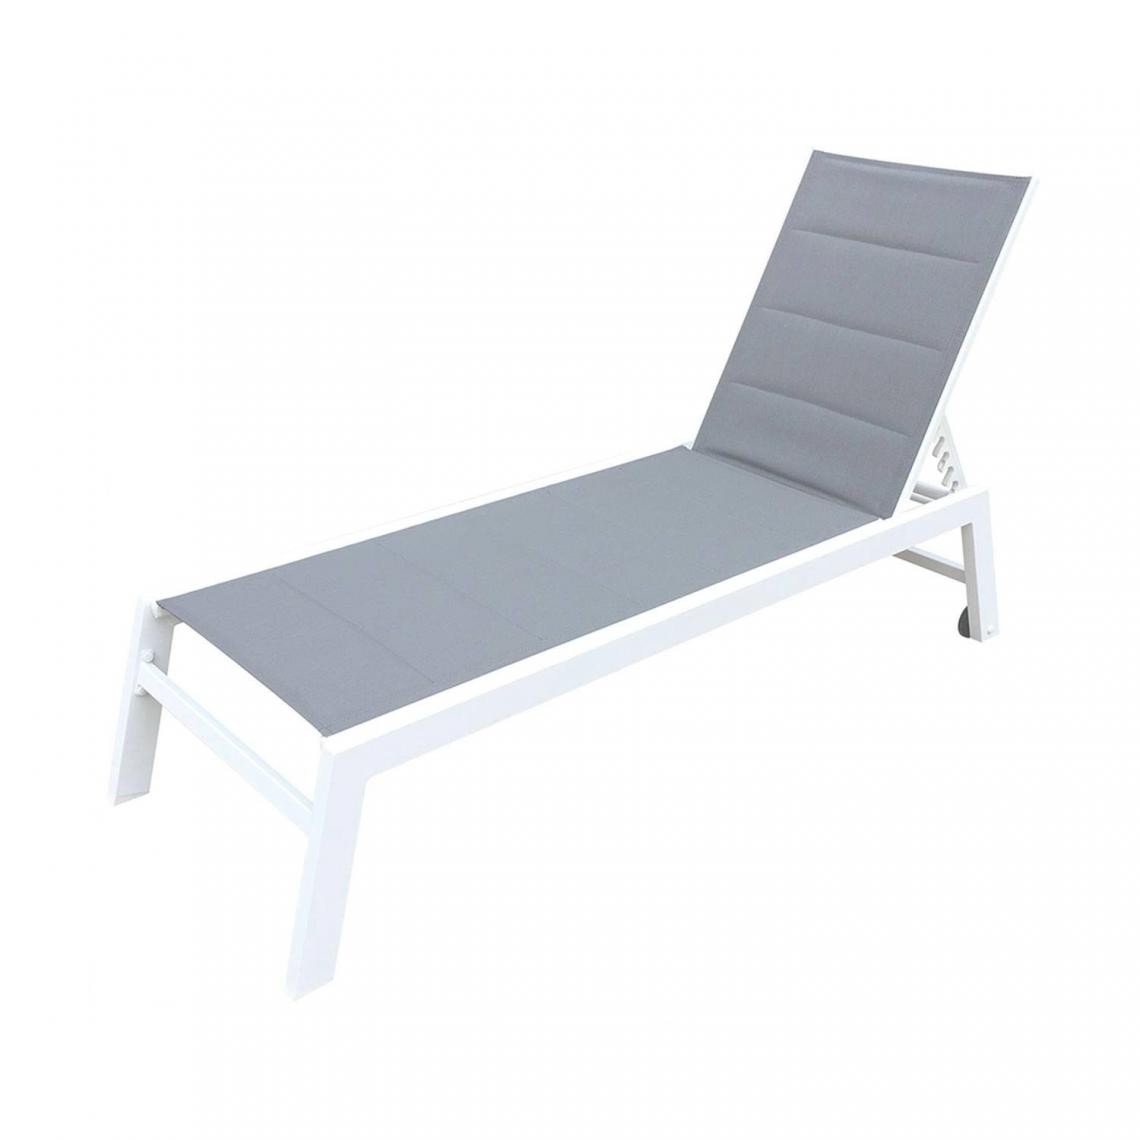 Beneffito - BAISAO - Bain de Soleil Droit Textilène Aluminium - GRIS/BLANC - X1 - Transats, chaises longues